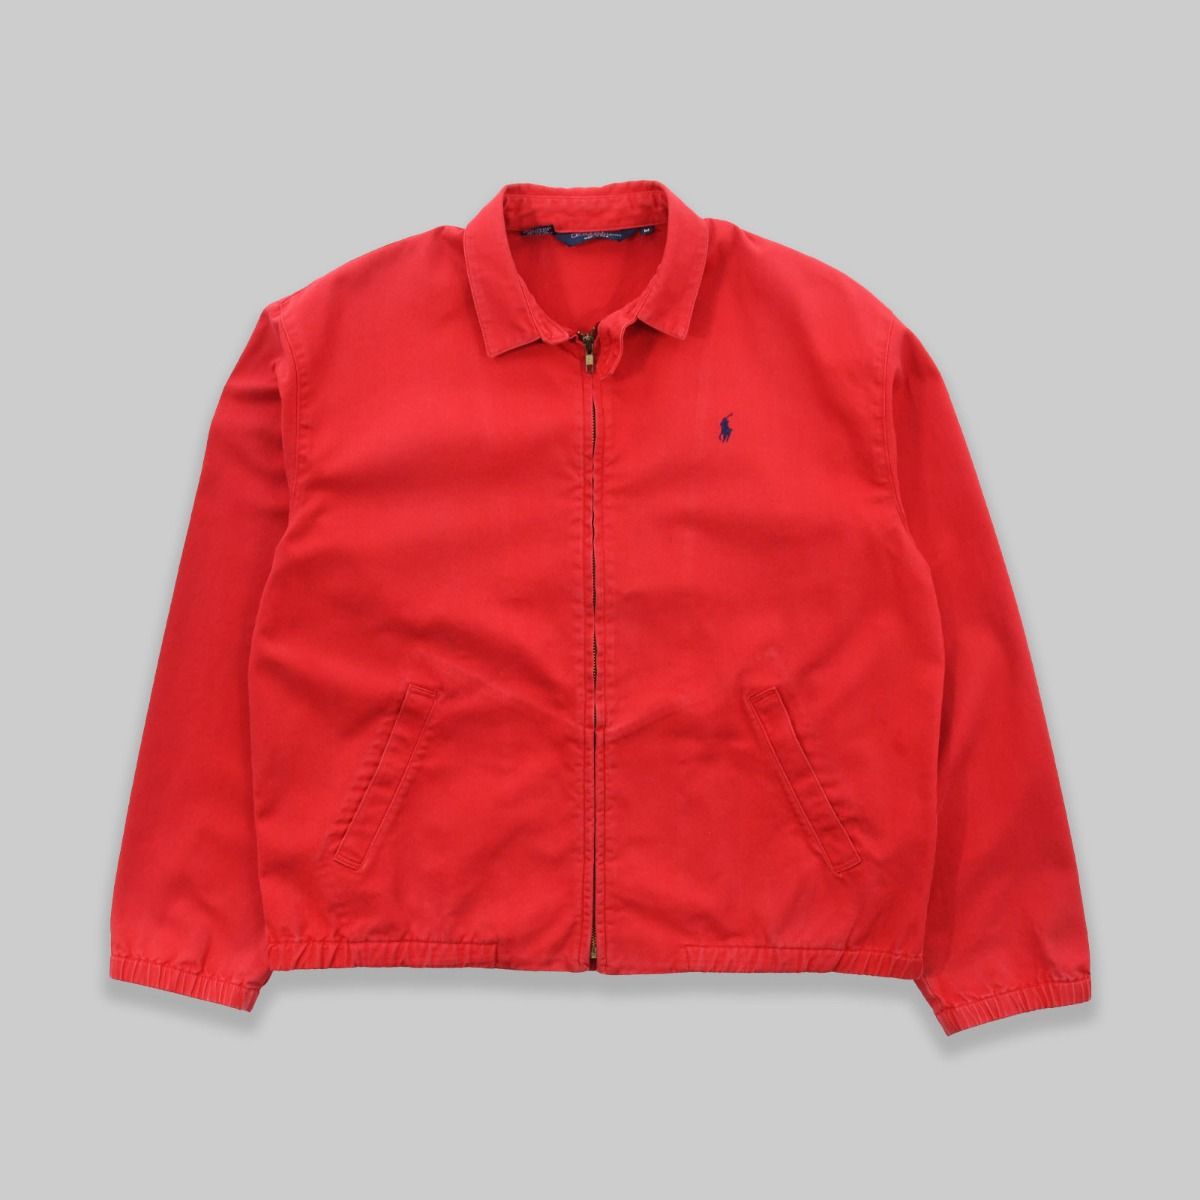 Ralph Lauren 1980s Harrington Red Jacket